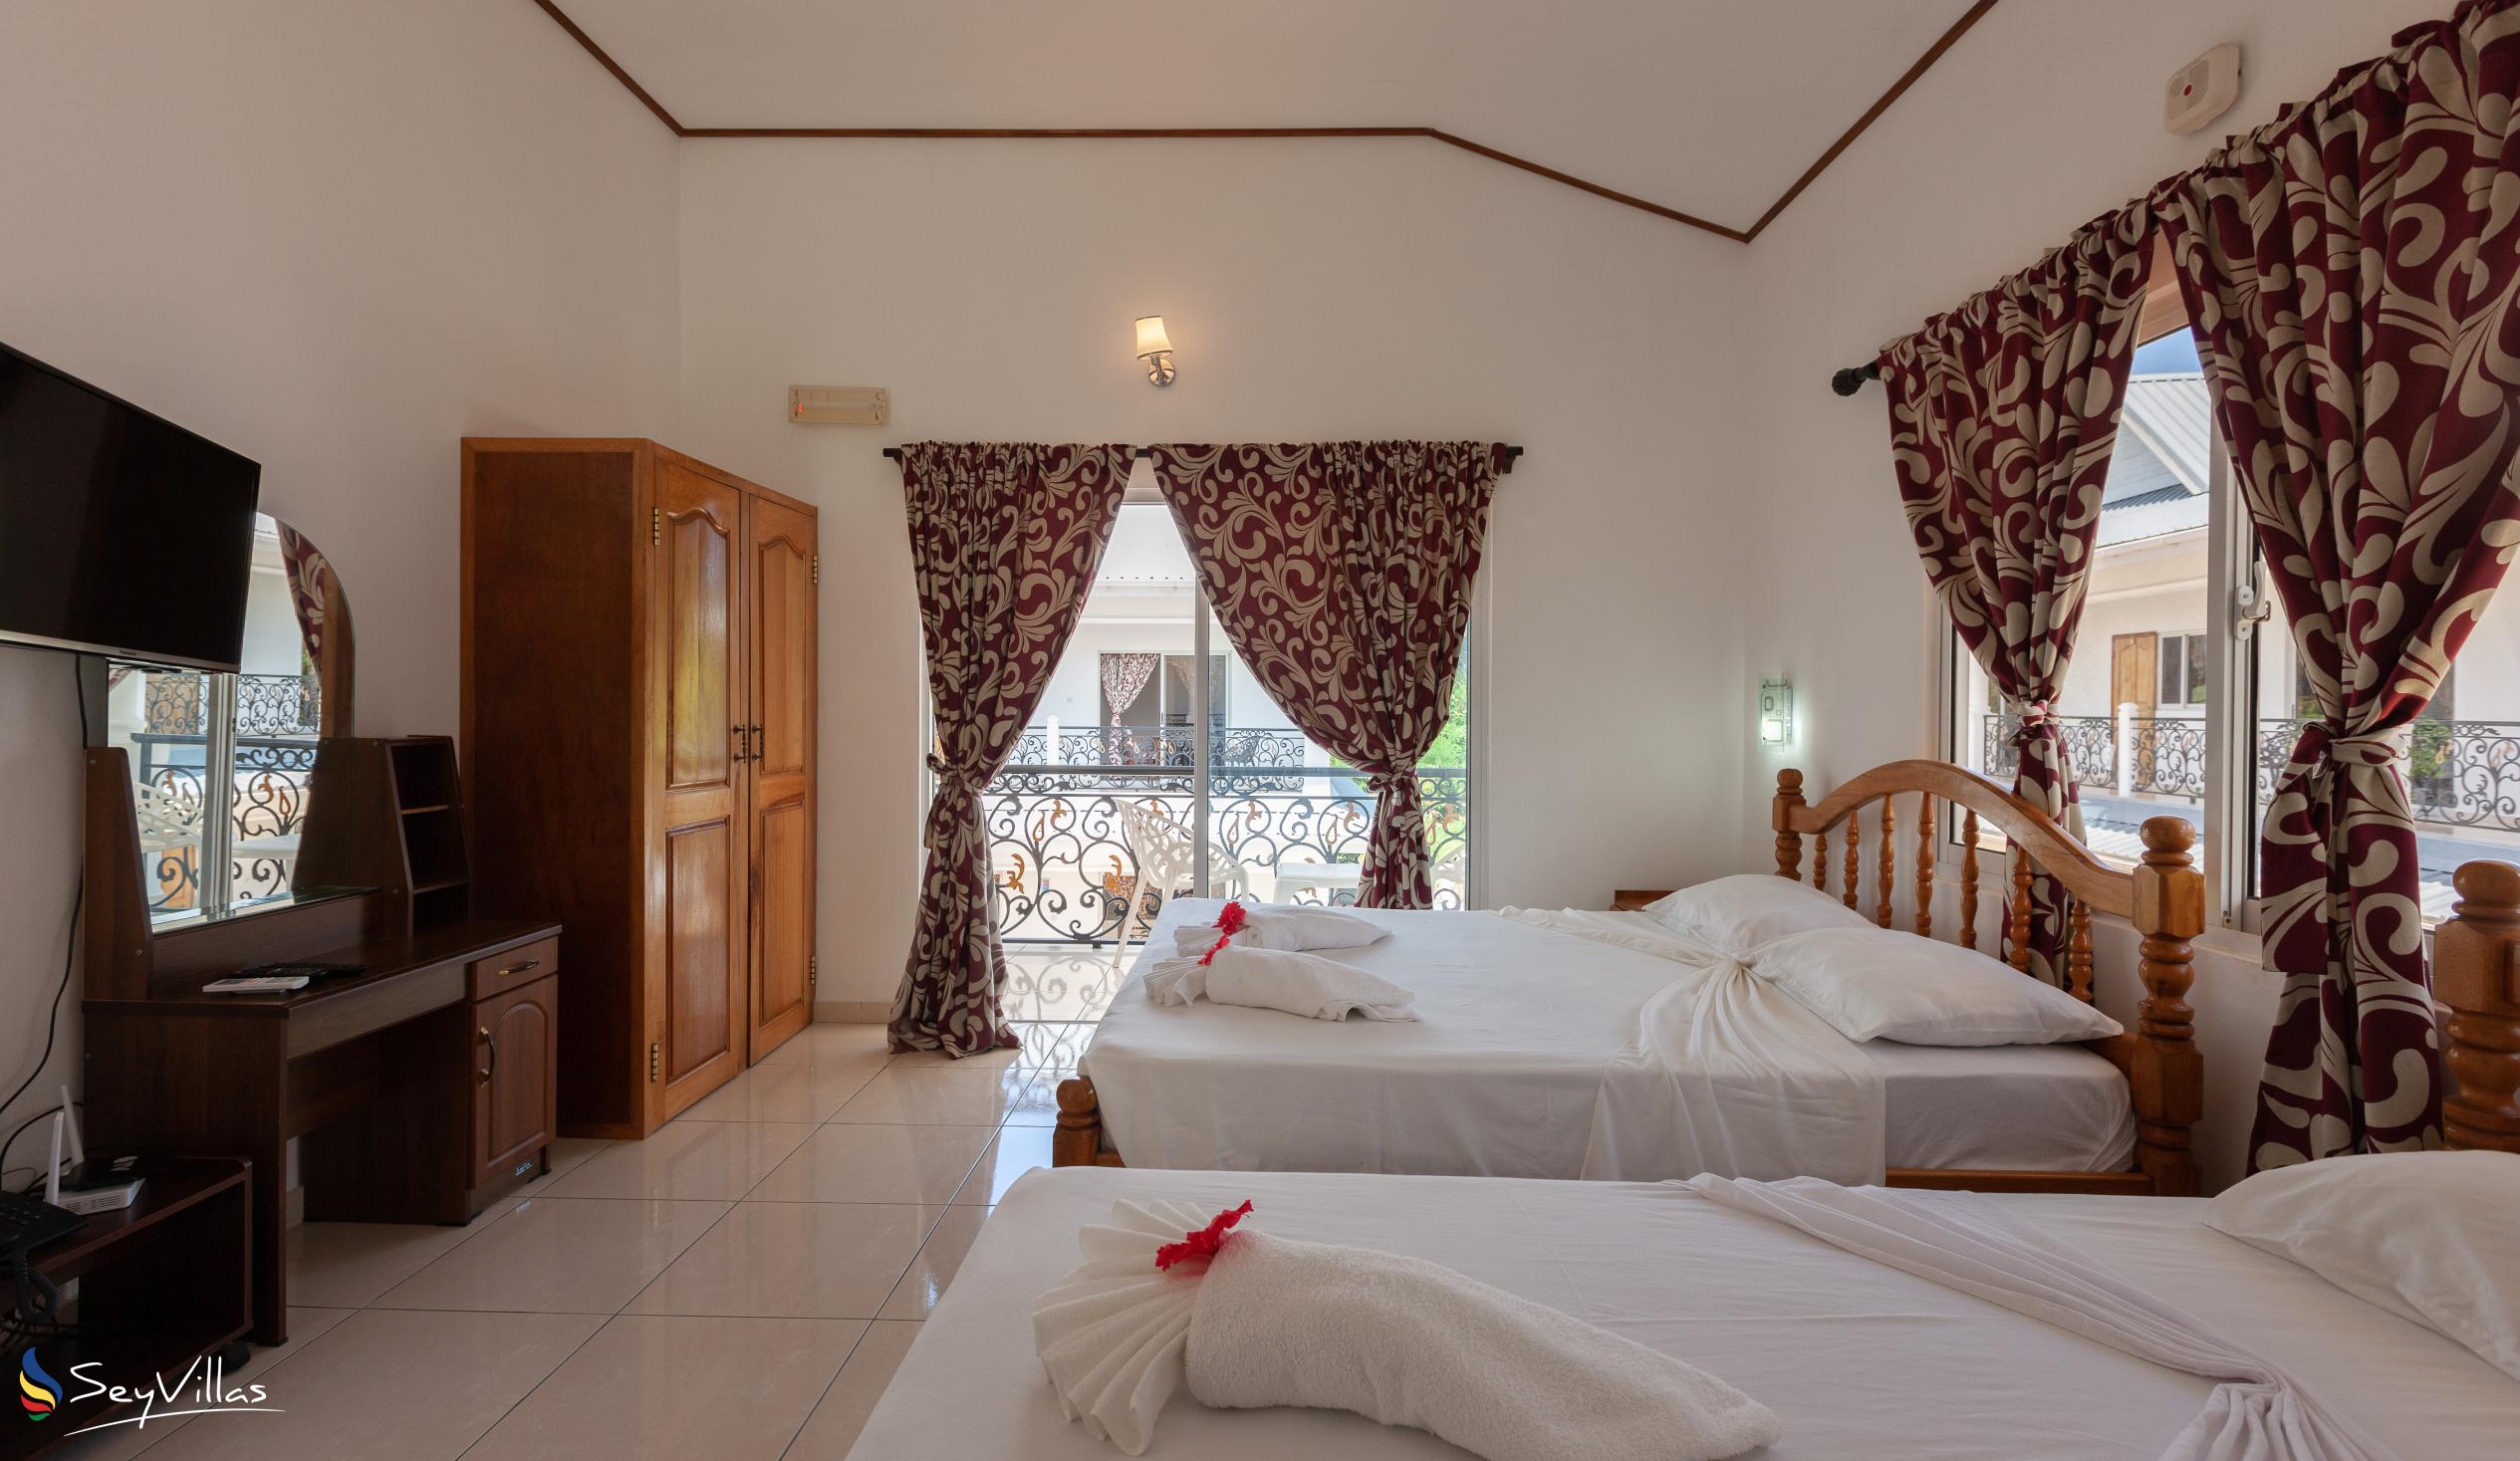 Foto 32: Casadani Luxury Guest House - Standardzimmer - Praslin (Seychellen)